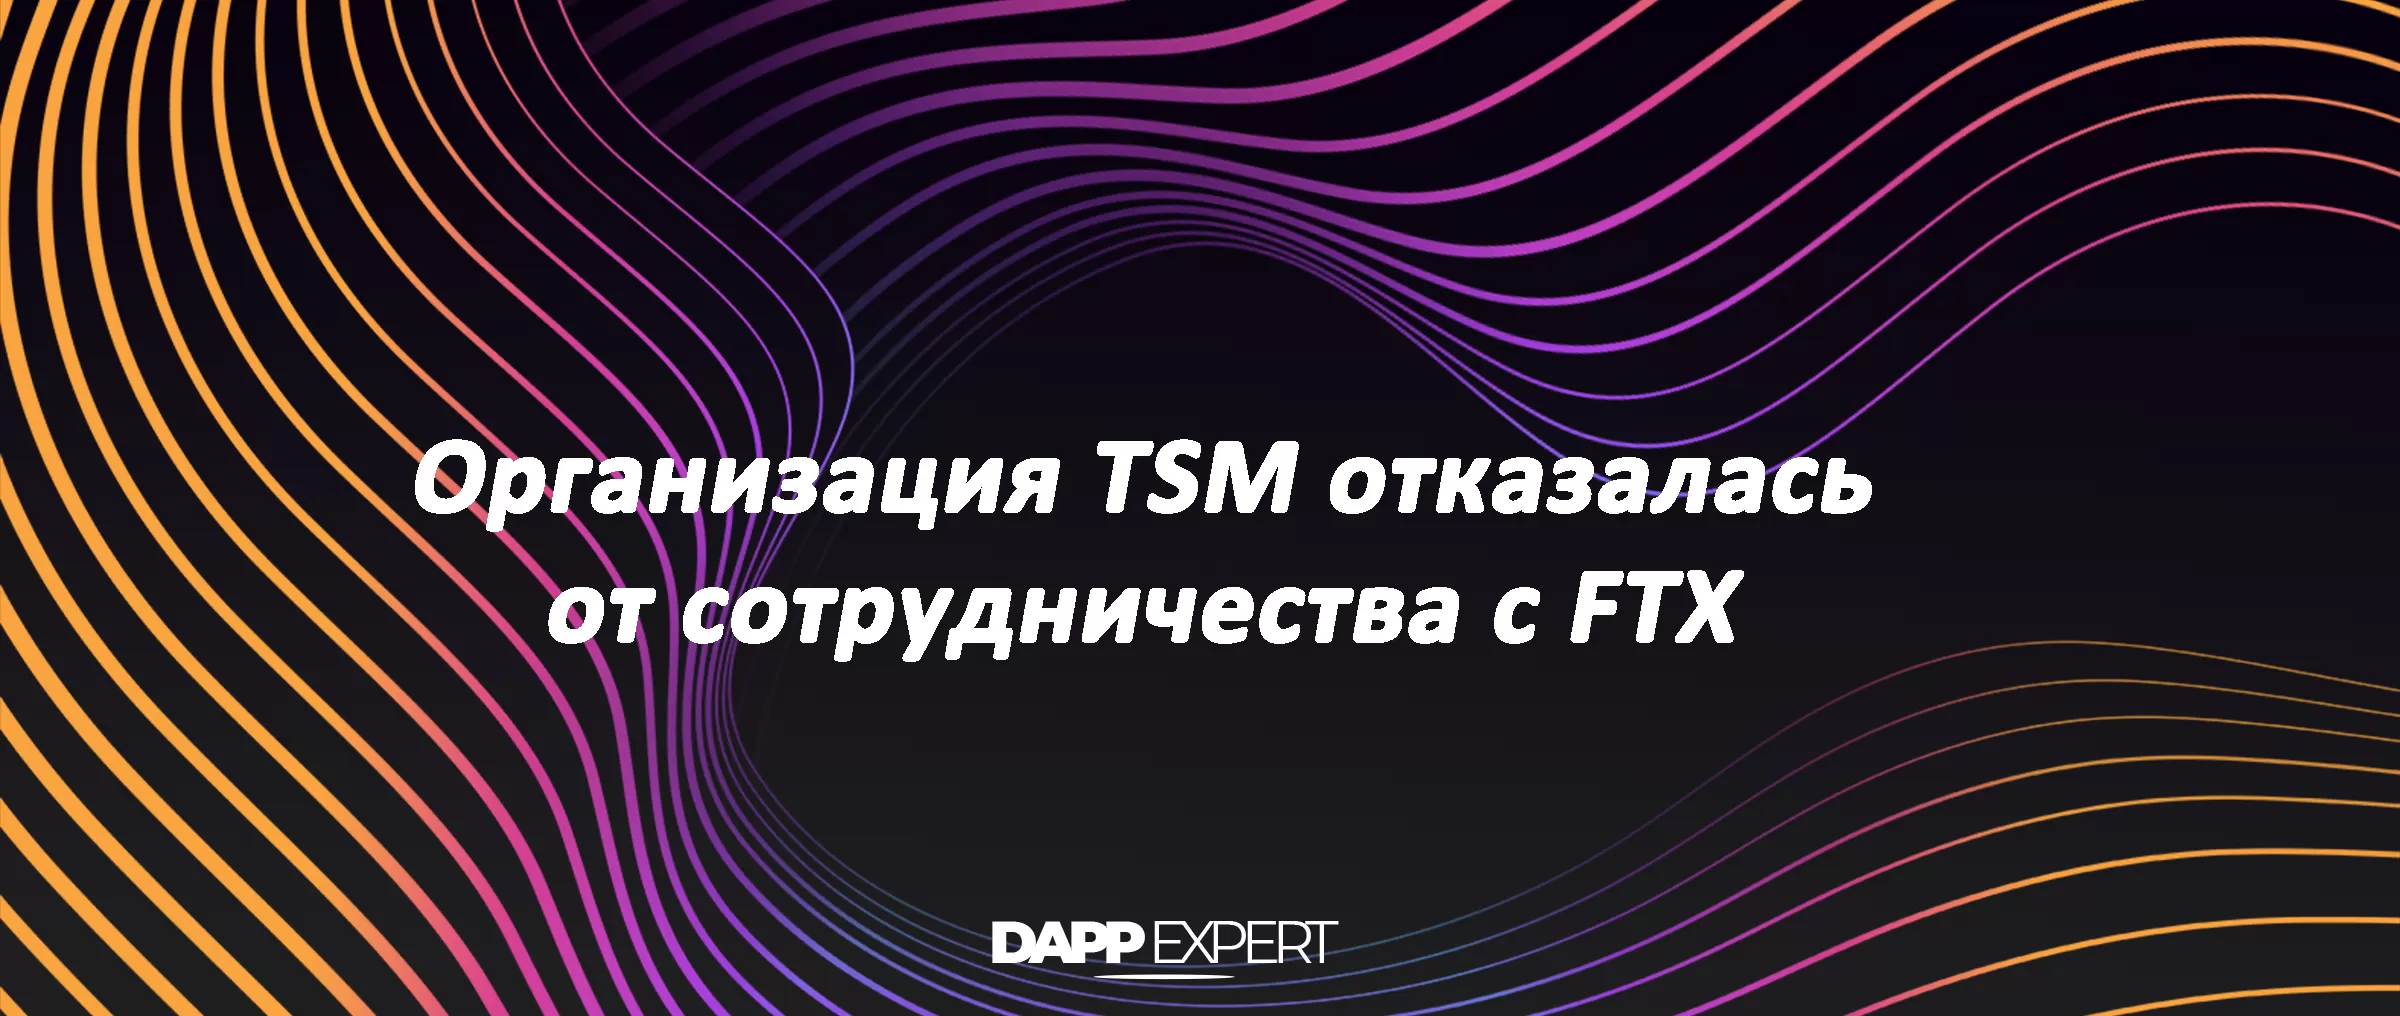 Организация TSM отказалась от сотрудничества с FTX